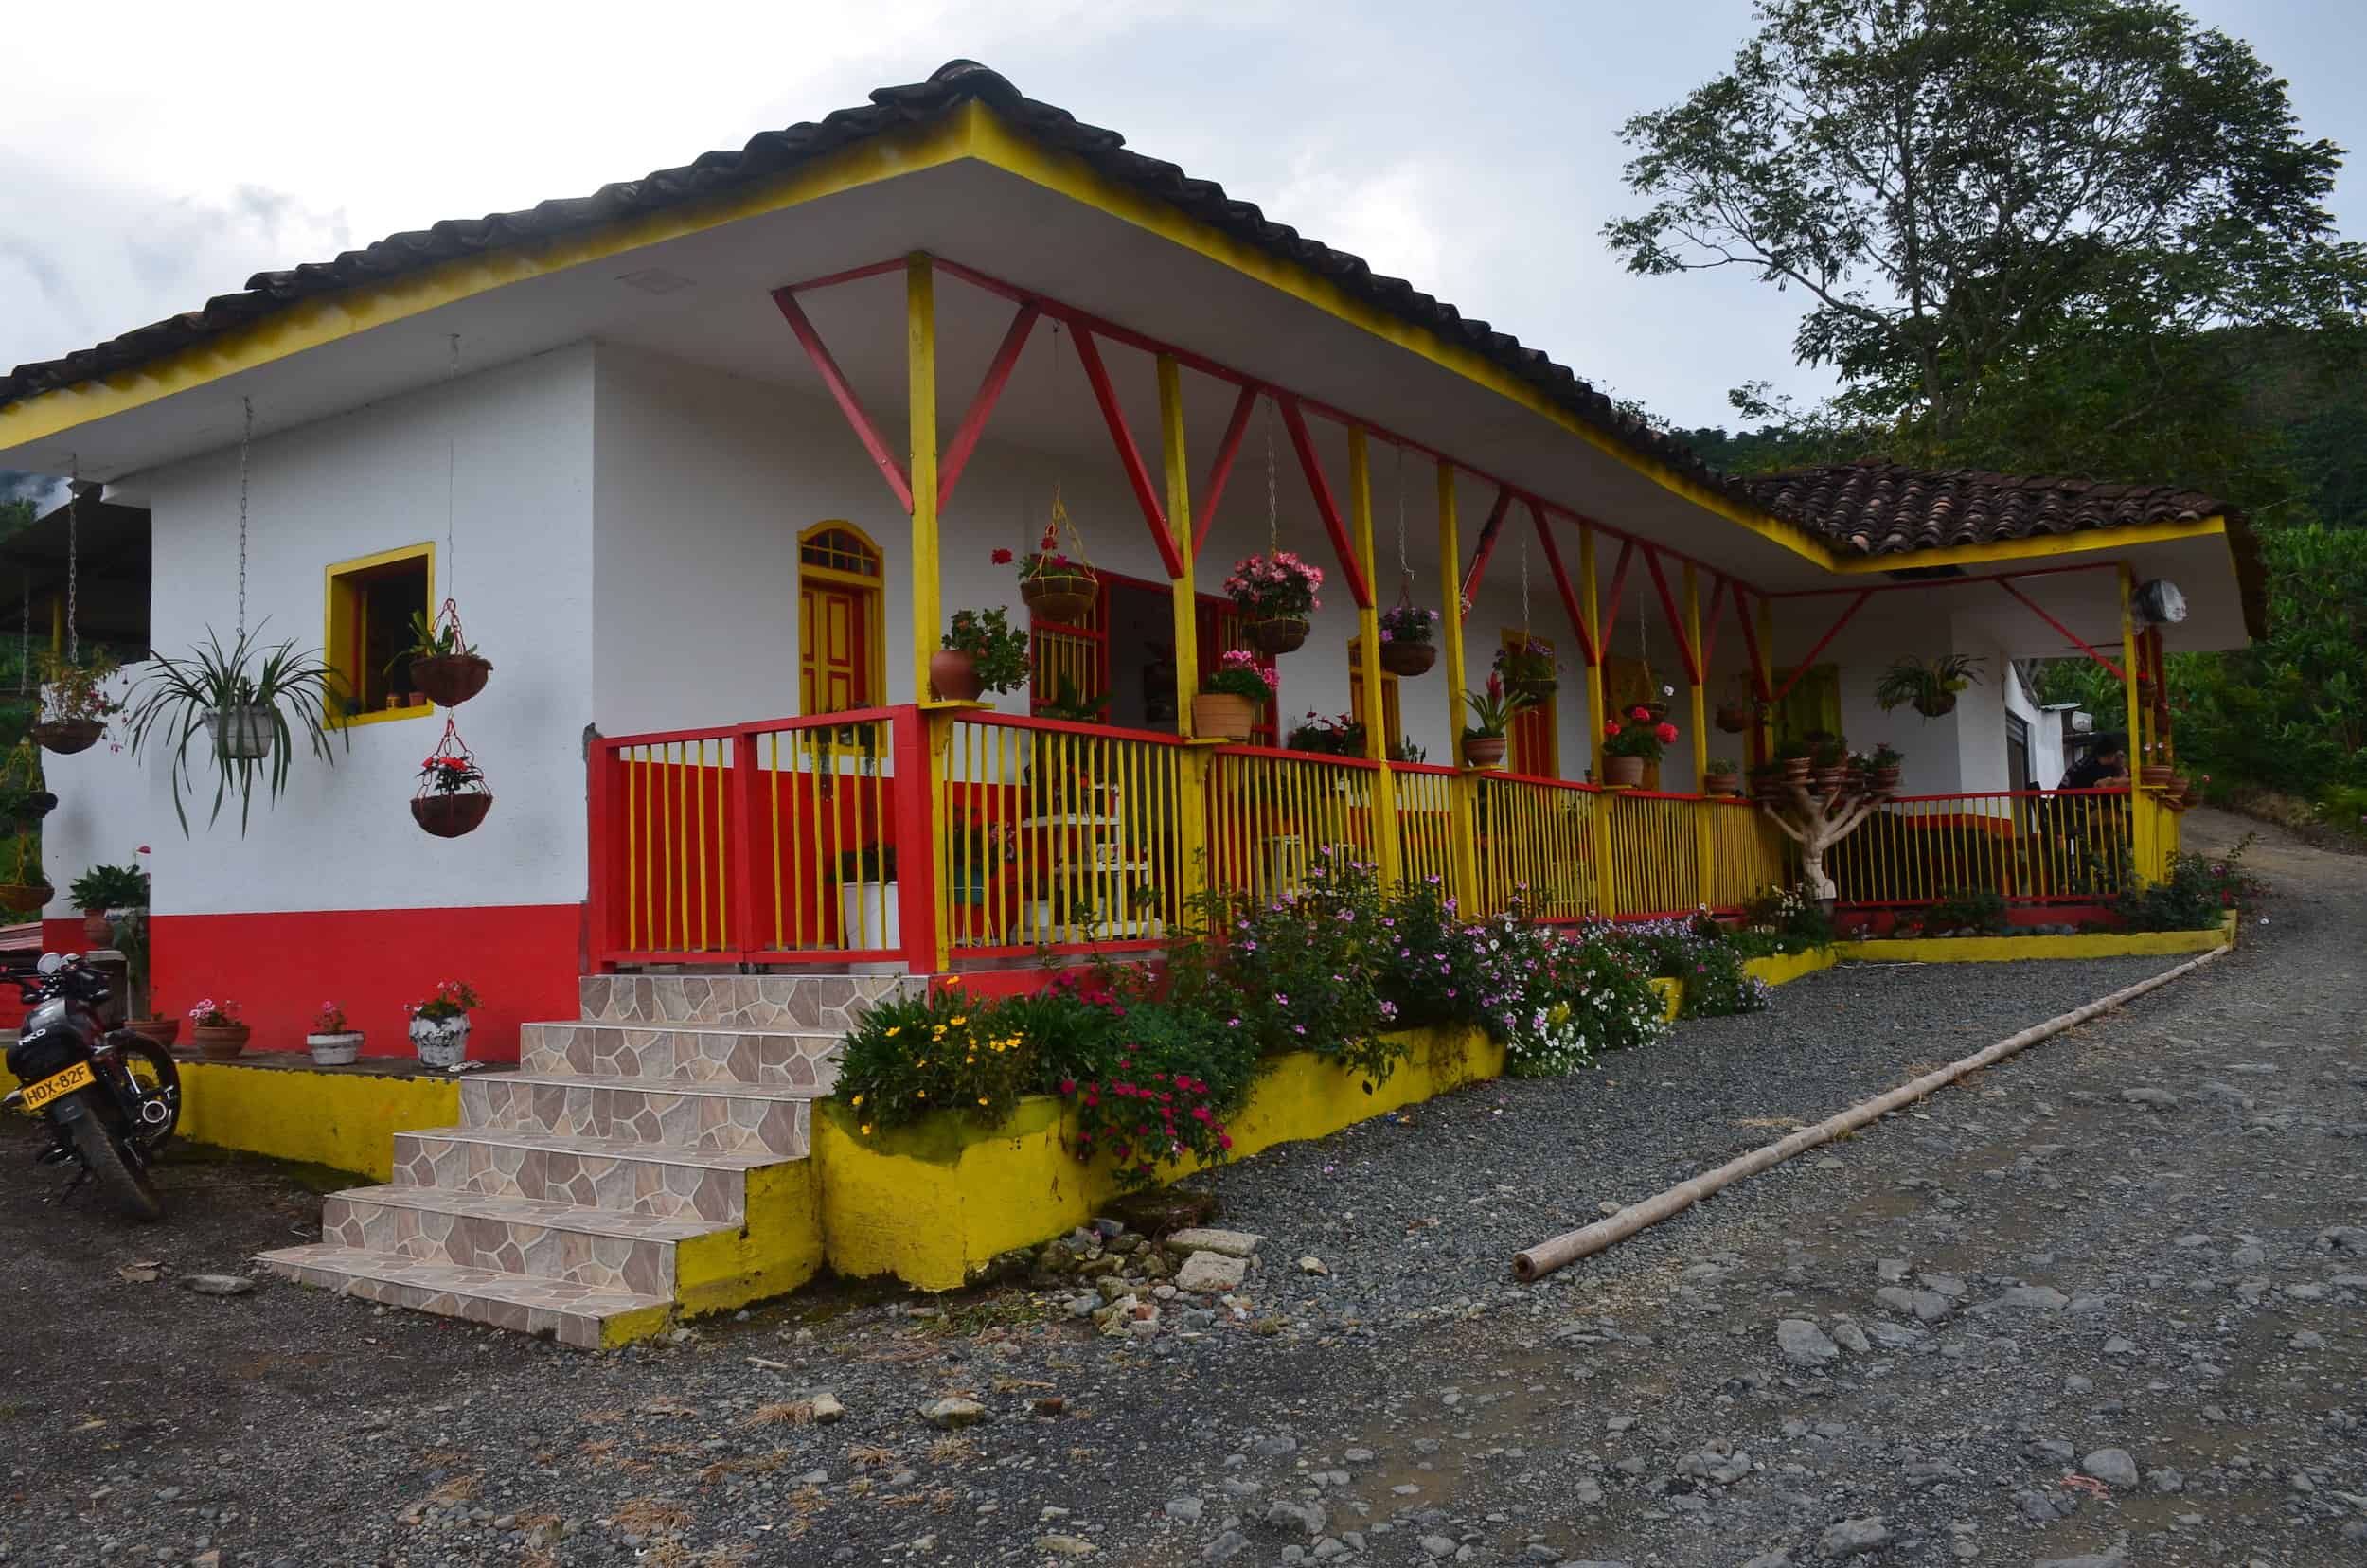 House at Mirador Las Veraneras